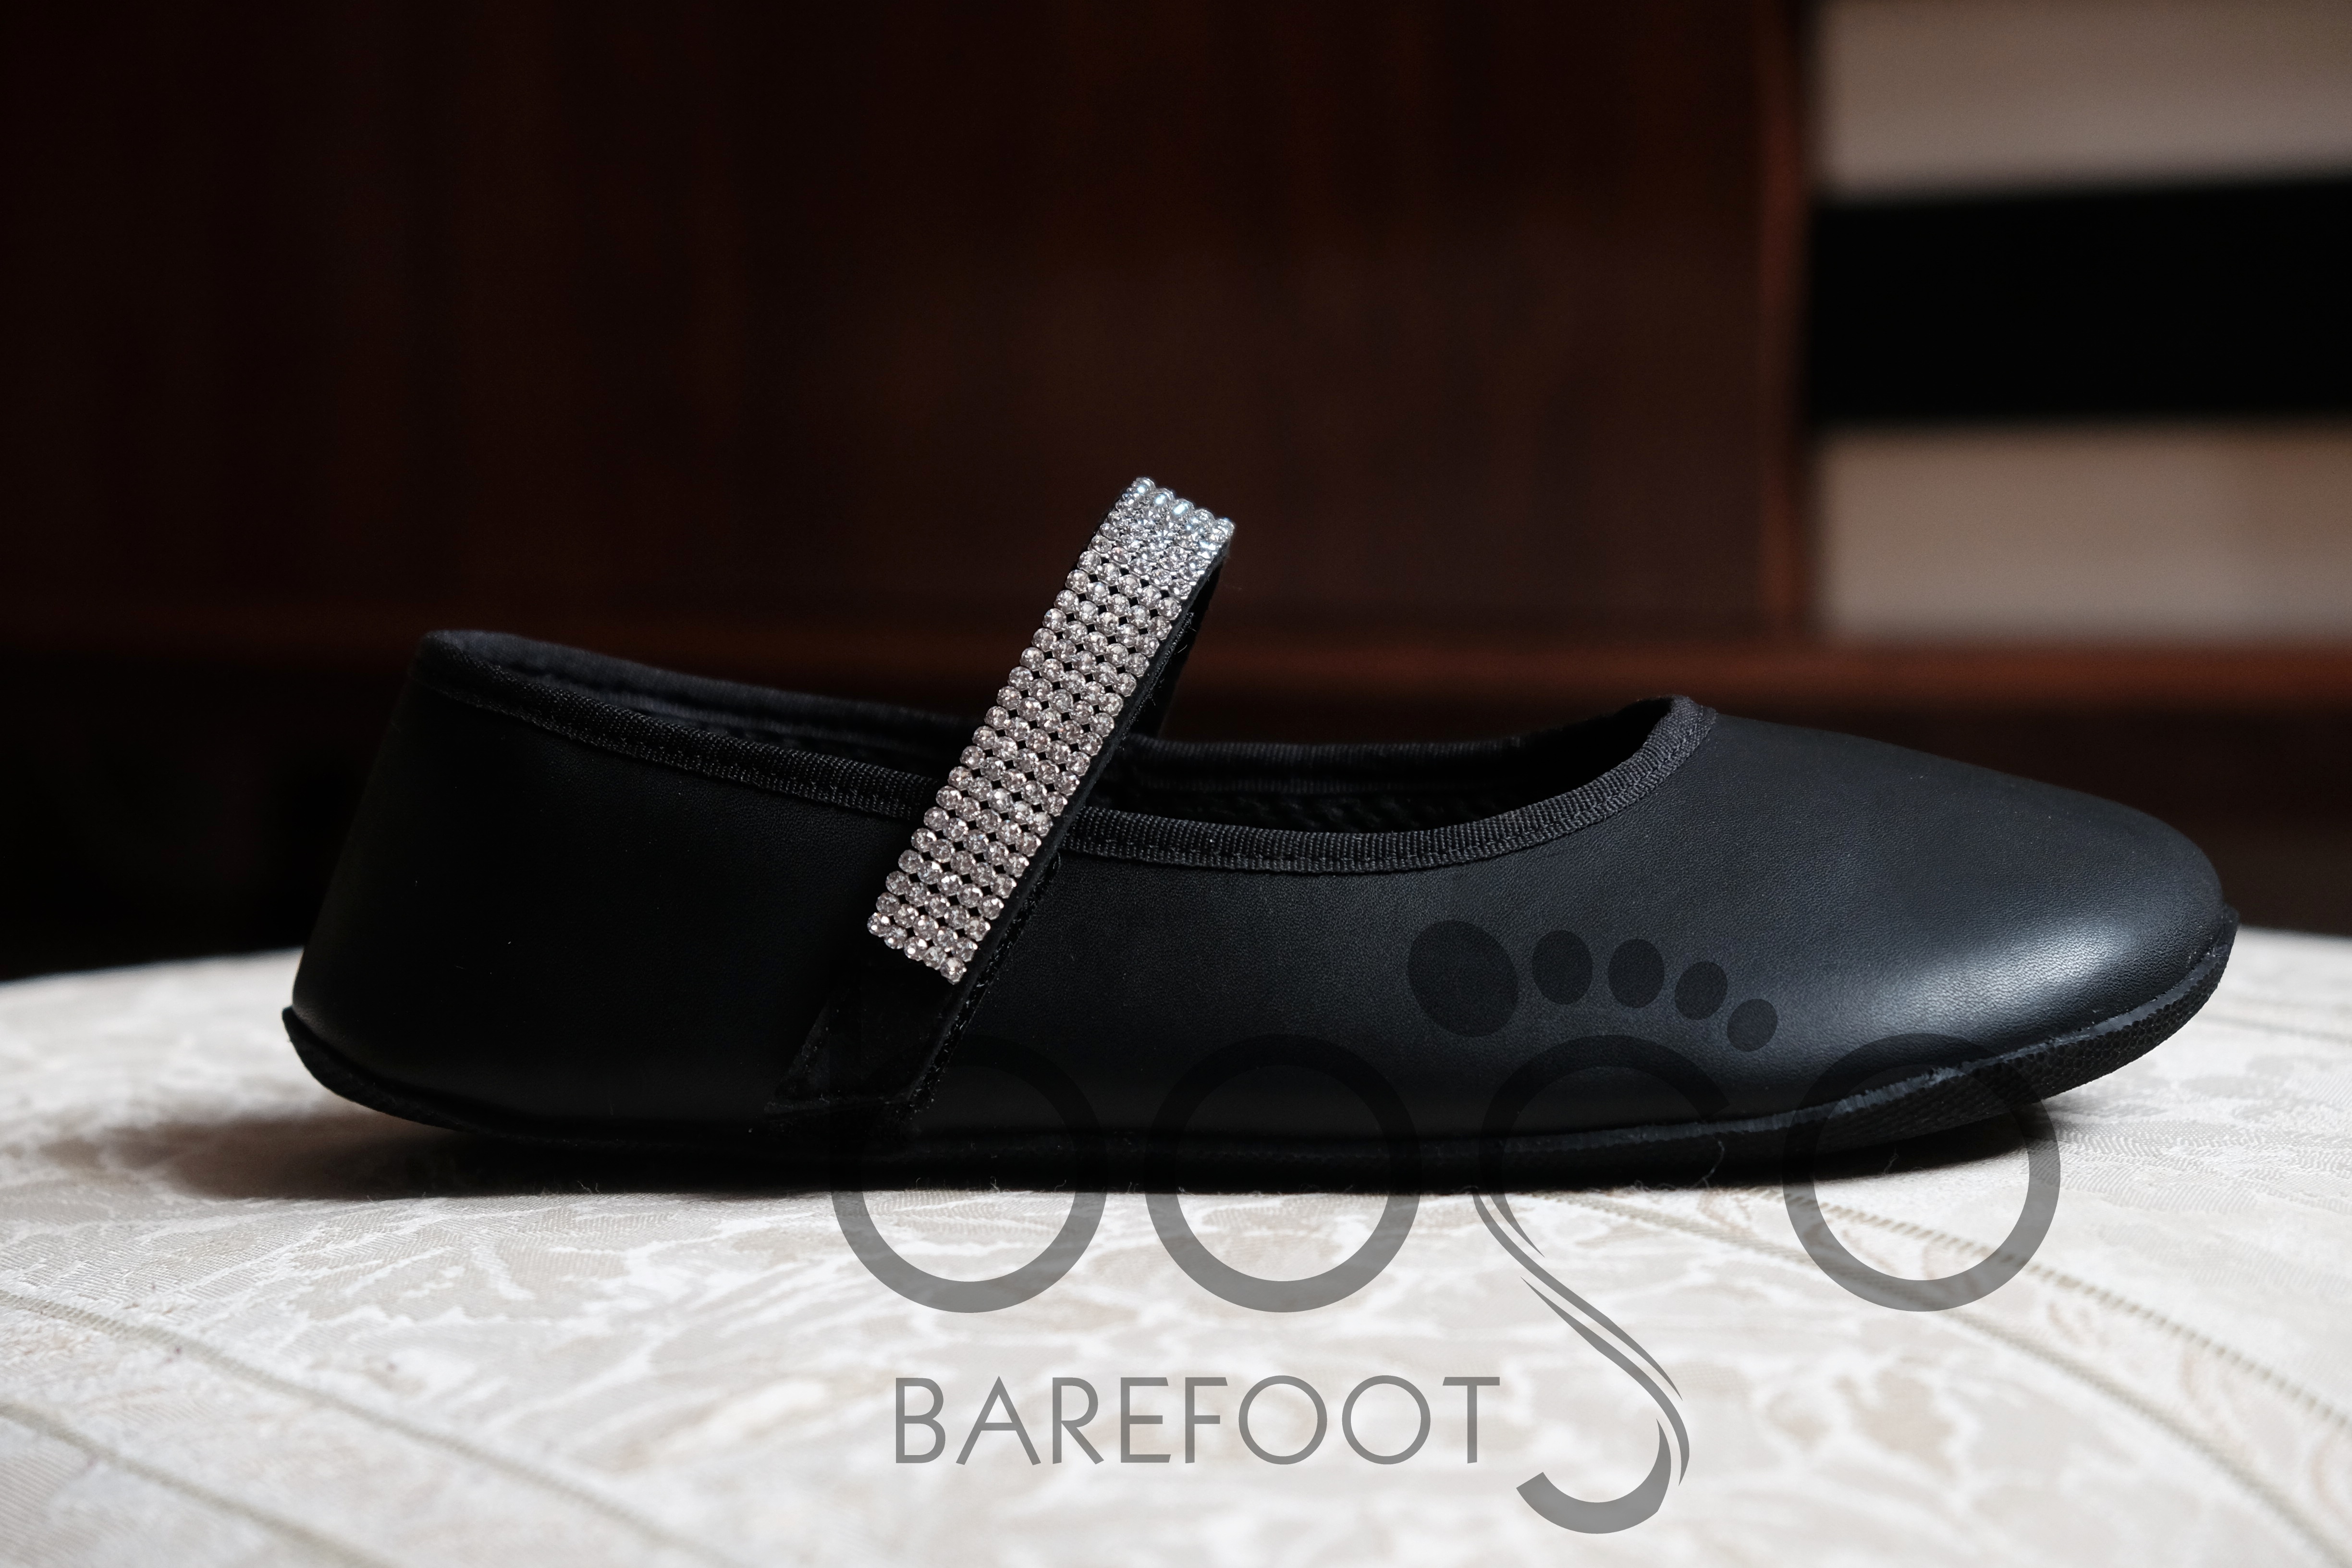 Barefoot do společnosti - přečtěte si náš nový článek na blogu!